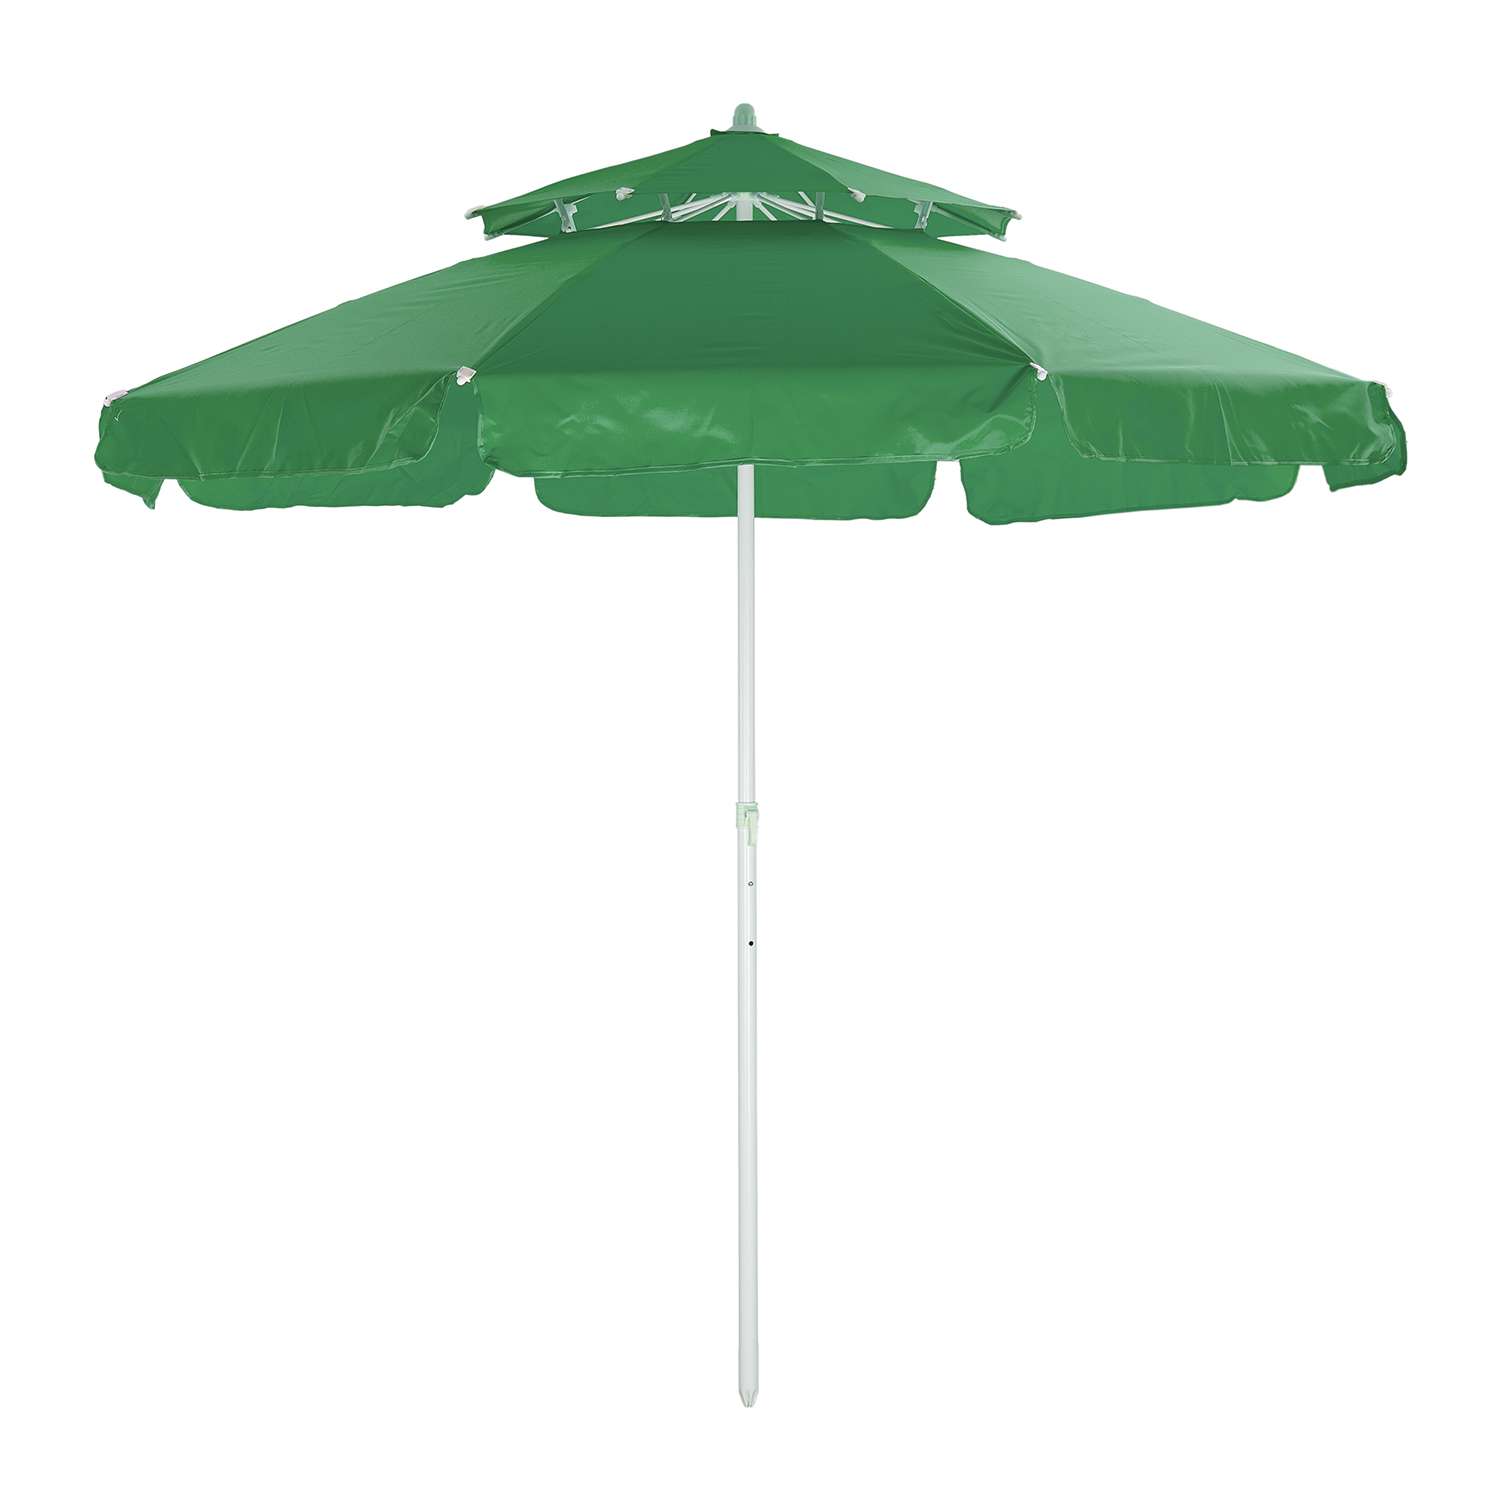 Зонт пляжный BABY STYLE большой с двойным клапаном 2.7 м зеленый - фото 3